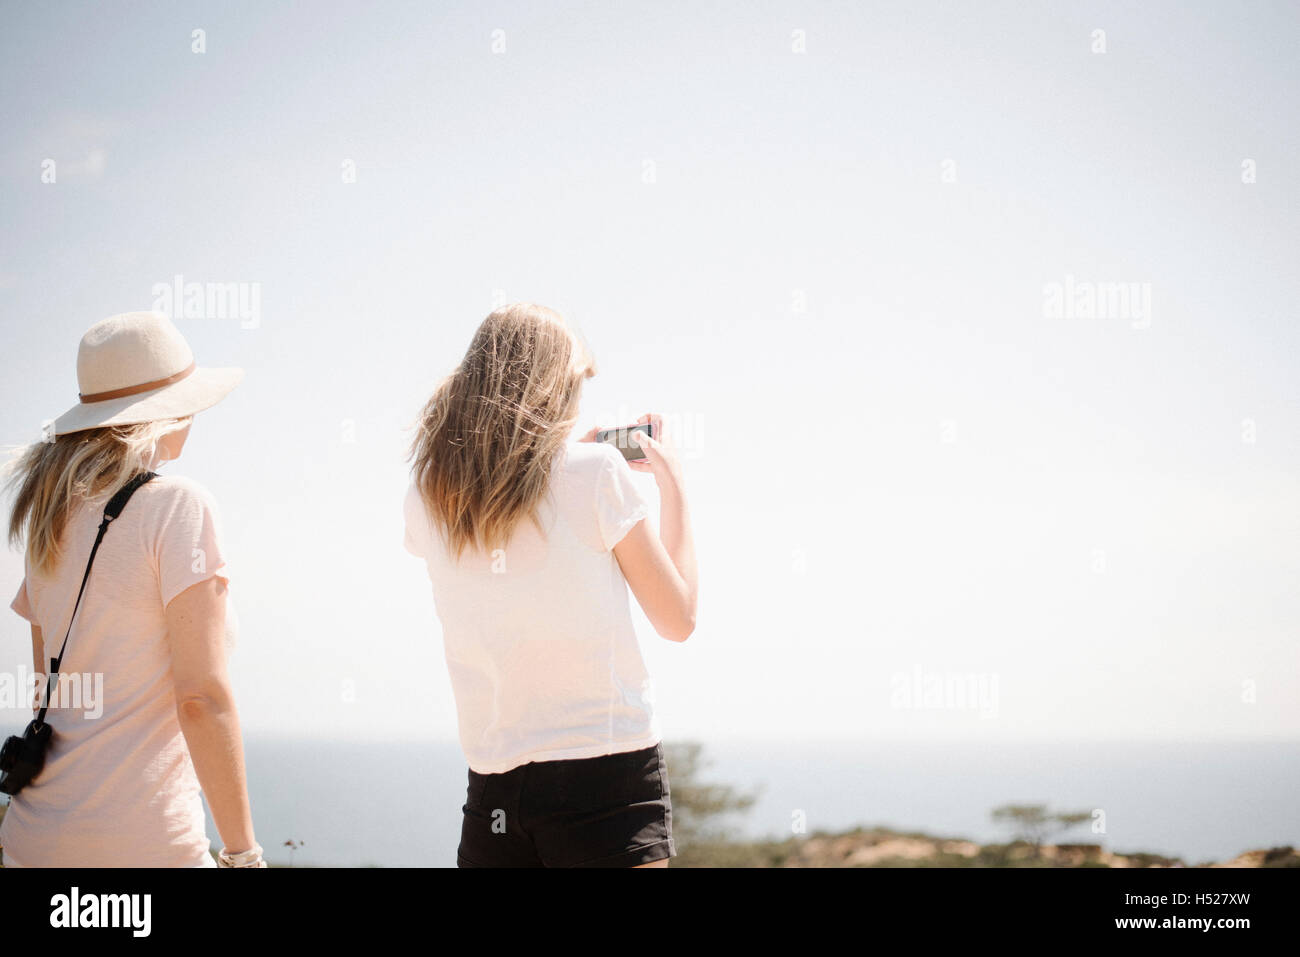 Donna e ragazza adolescente con lunghi capelli biondi all'aperto, tenendo in mano un telefono cellulare per scattare una foto. Foto Stock